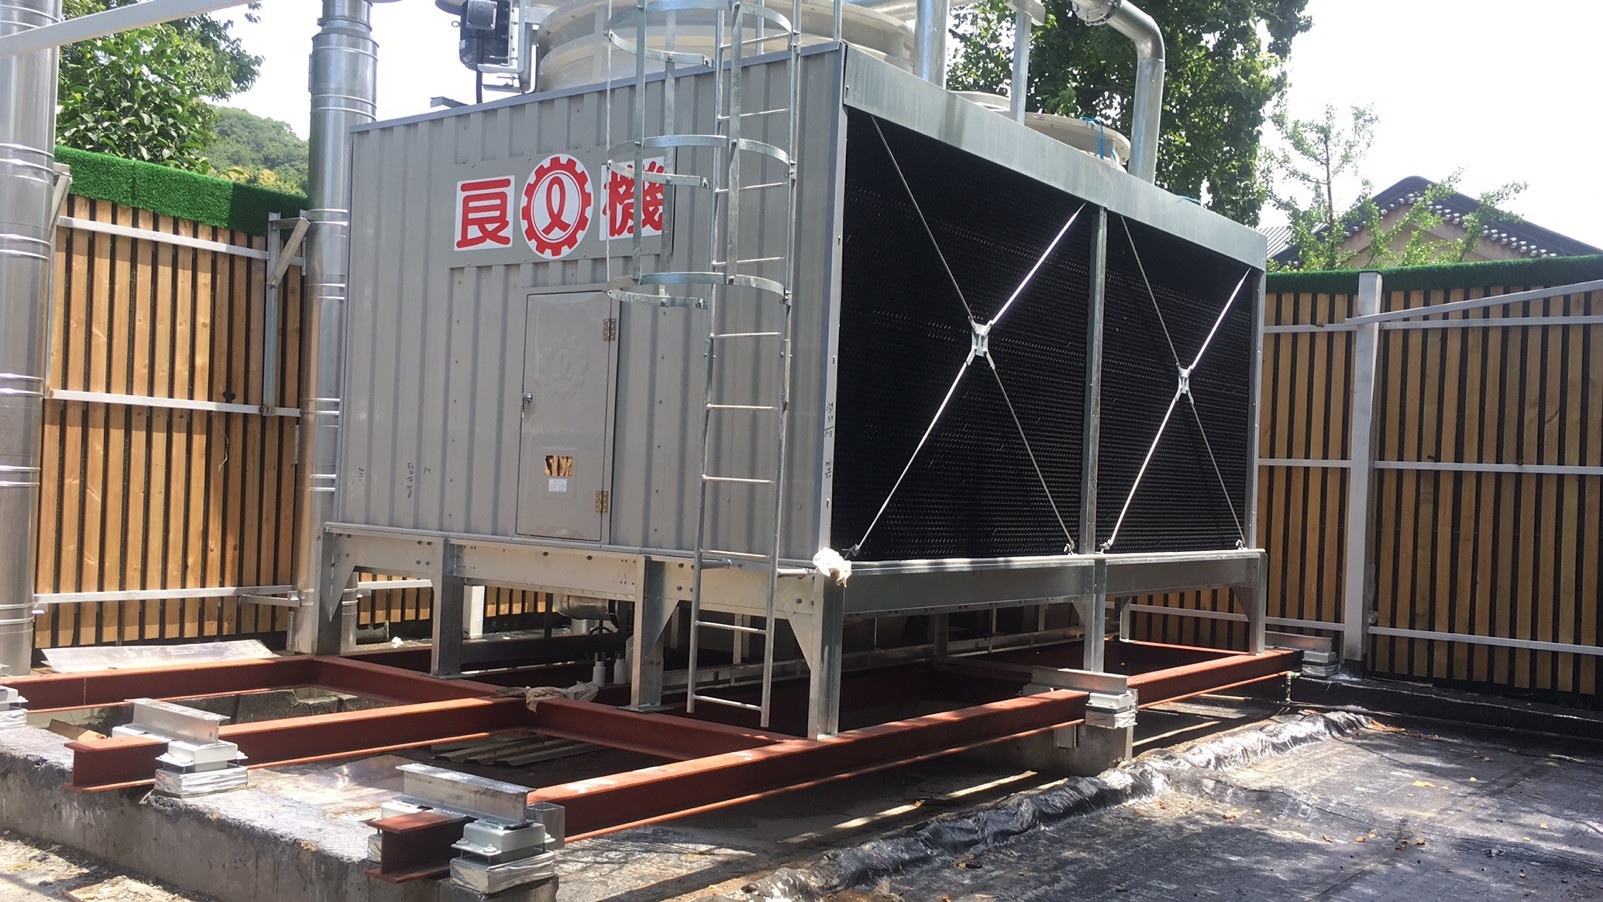 杭州新新饭店冷水机组低频噪声治理